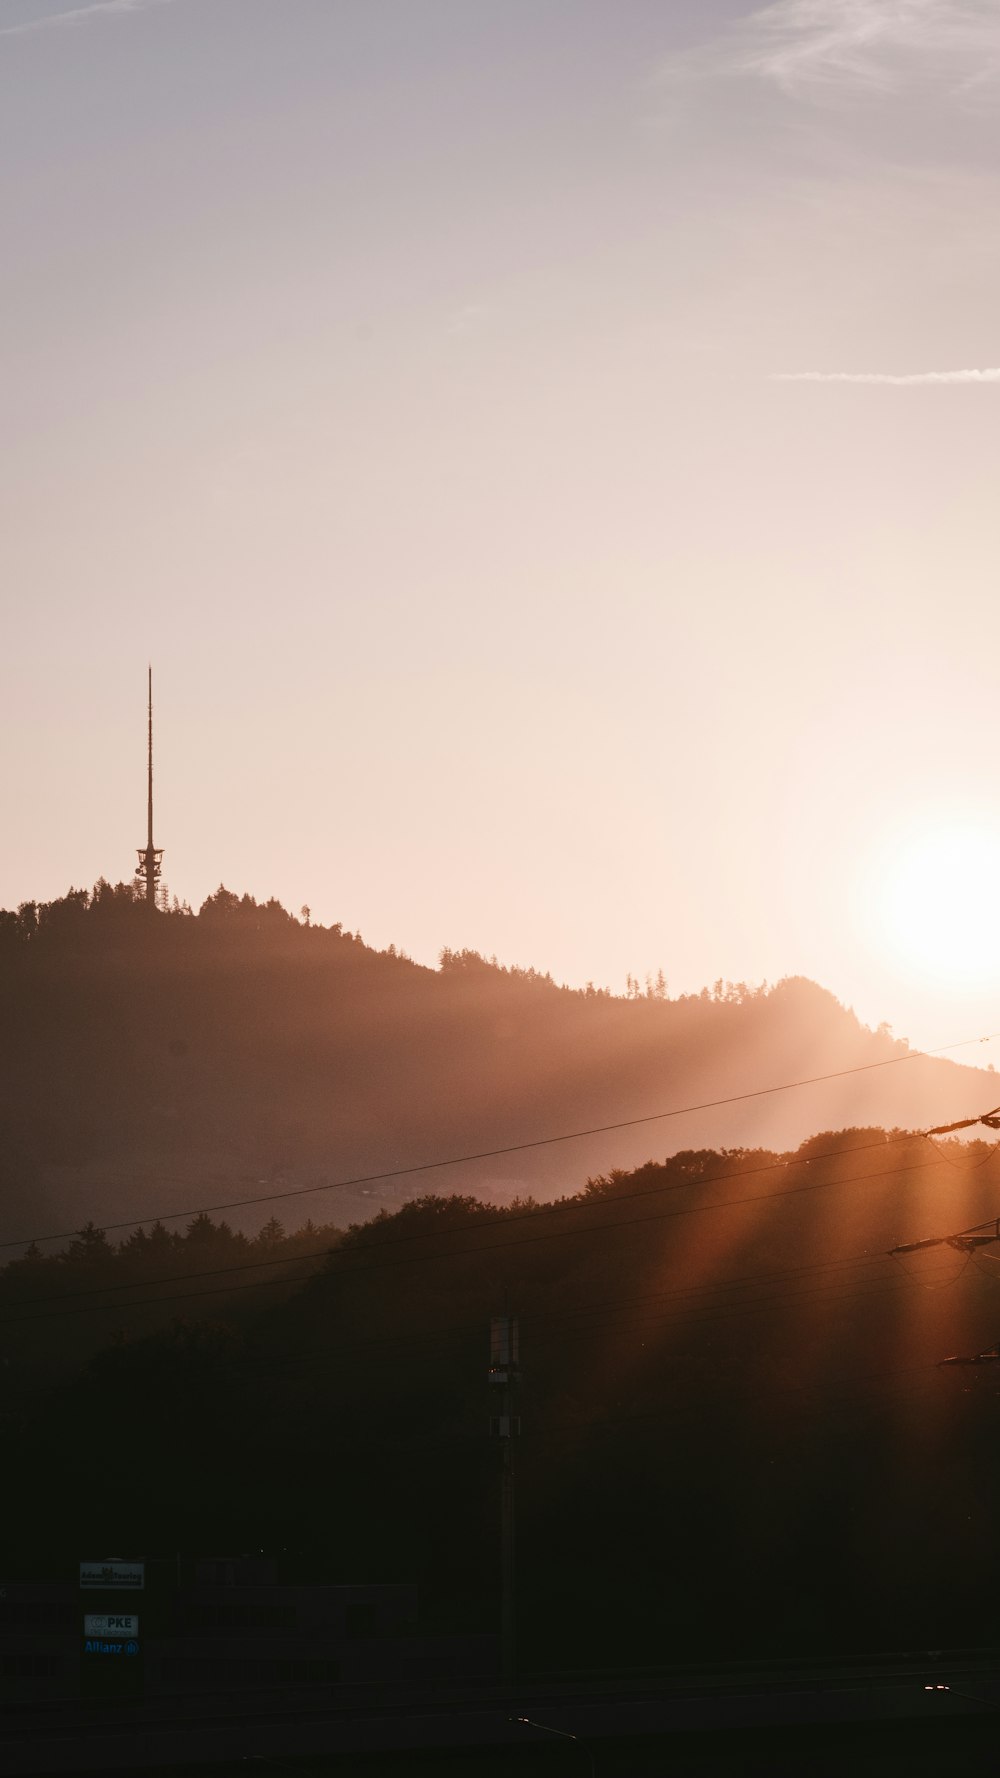 멀리 라디오 타워가있는 언덕 위로 태양이지고 있습니다.